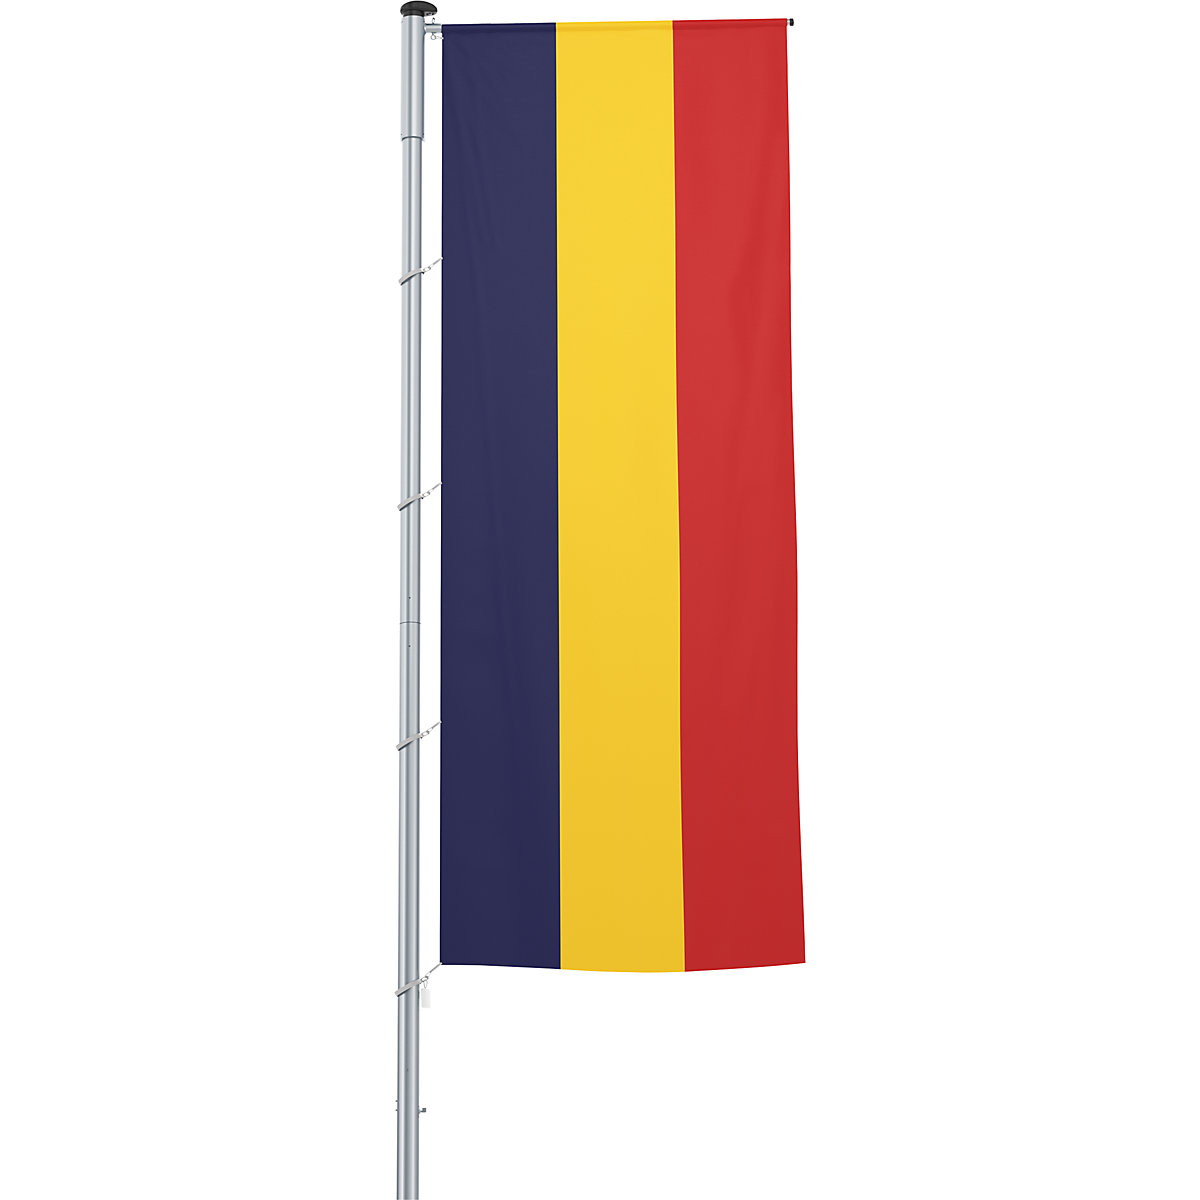 Steag pentru braţ/drapel naţional - Mannus